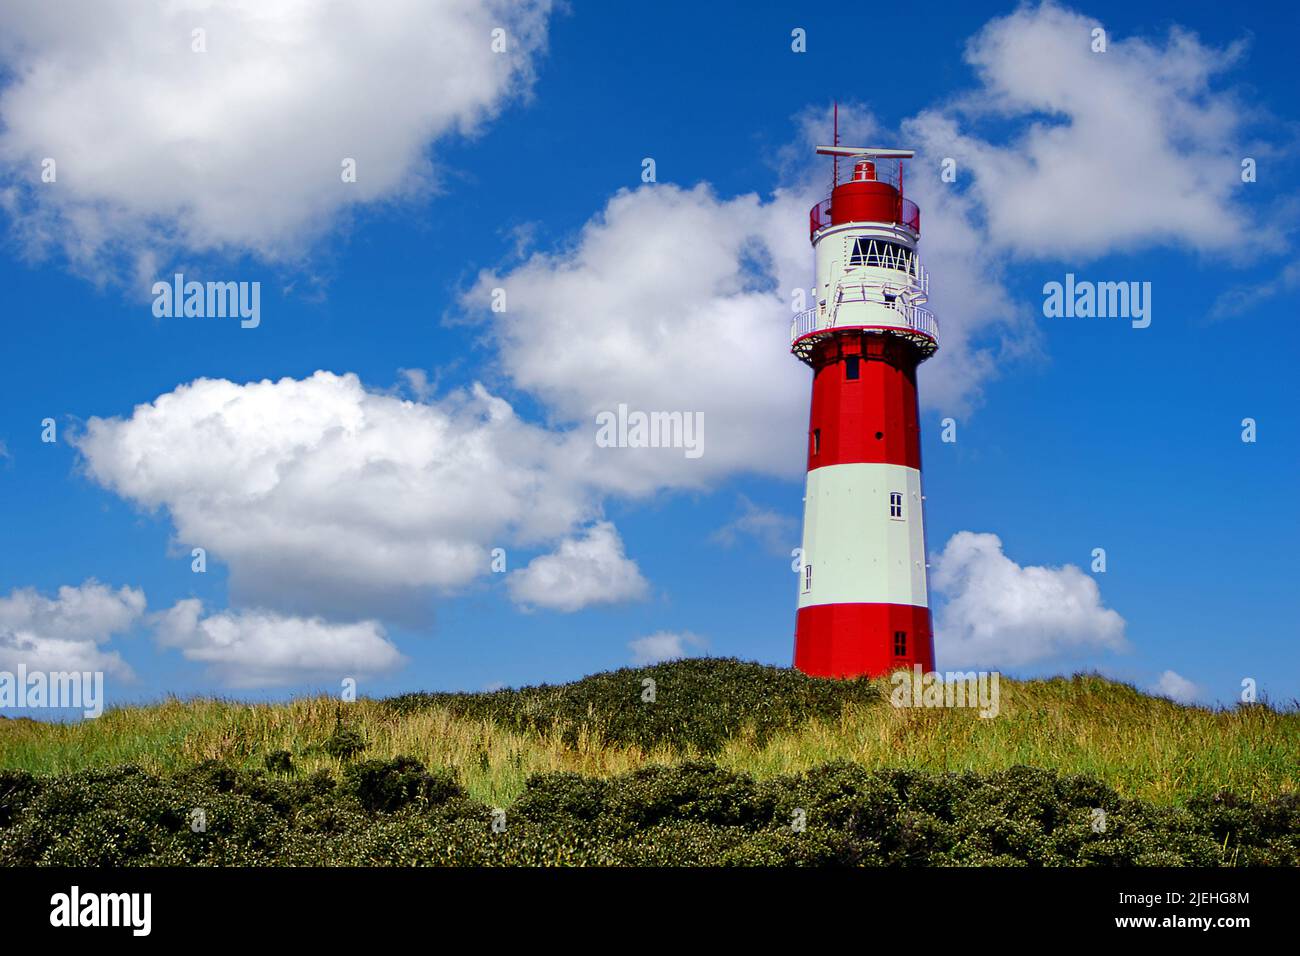 Der elektrische Leuchtturm von Borkum, Ostfriesland, Ostfriesische Inseln, Niedersachsen, Deutschland, Stock Photo